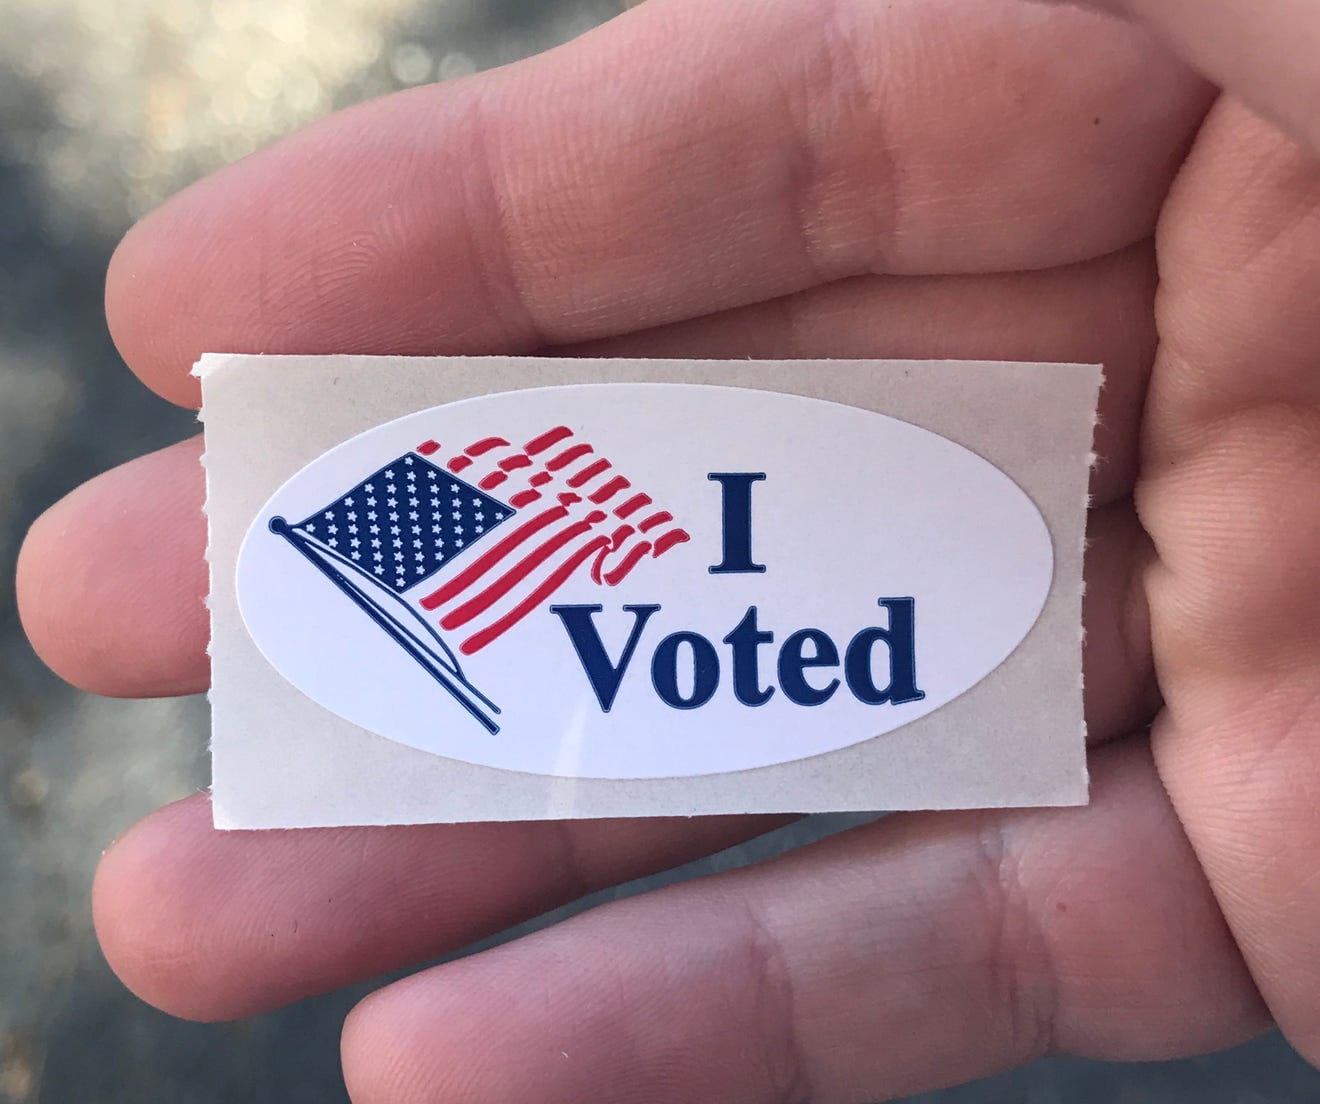 i voted